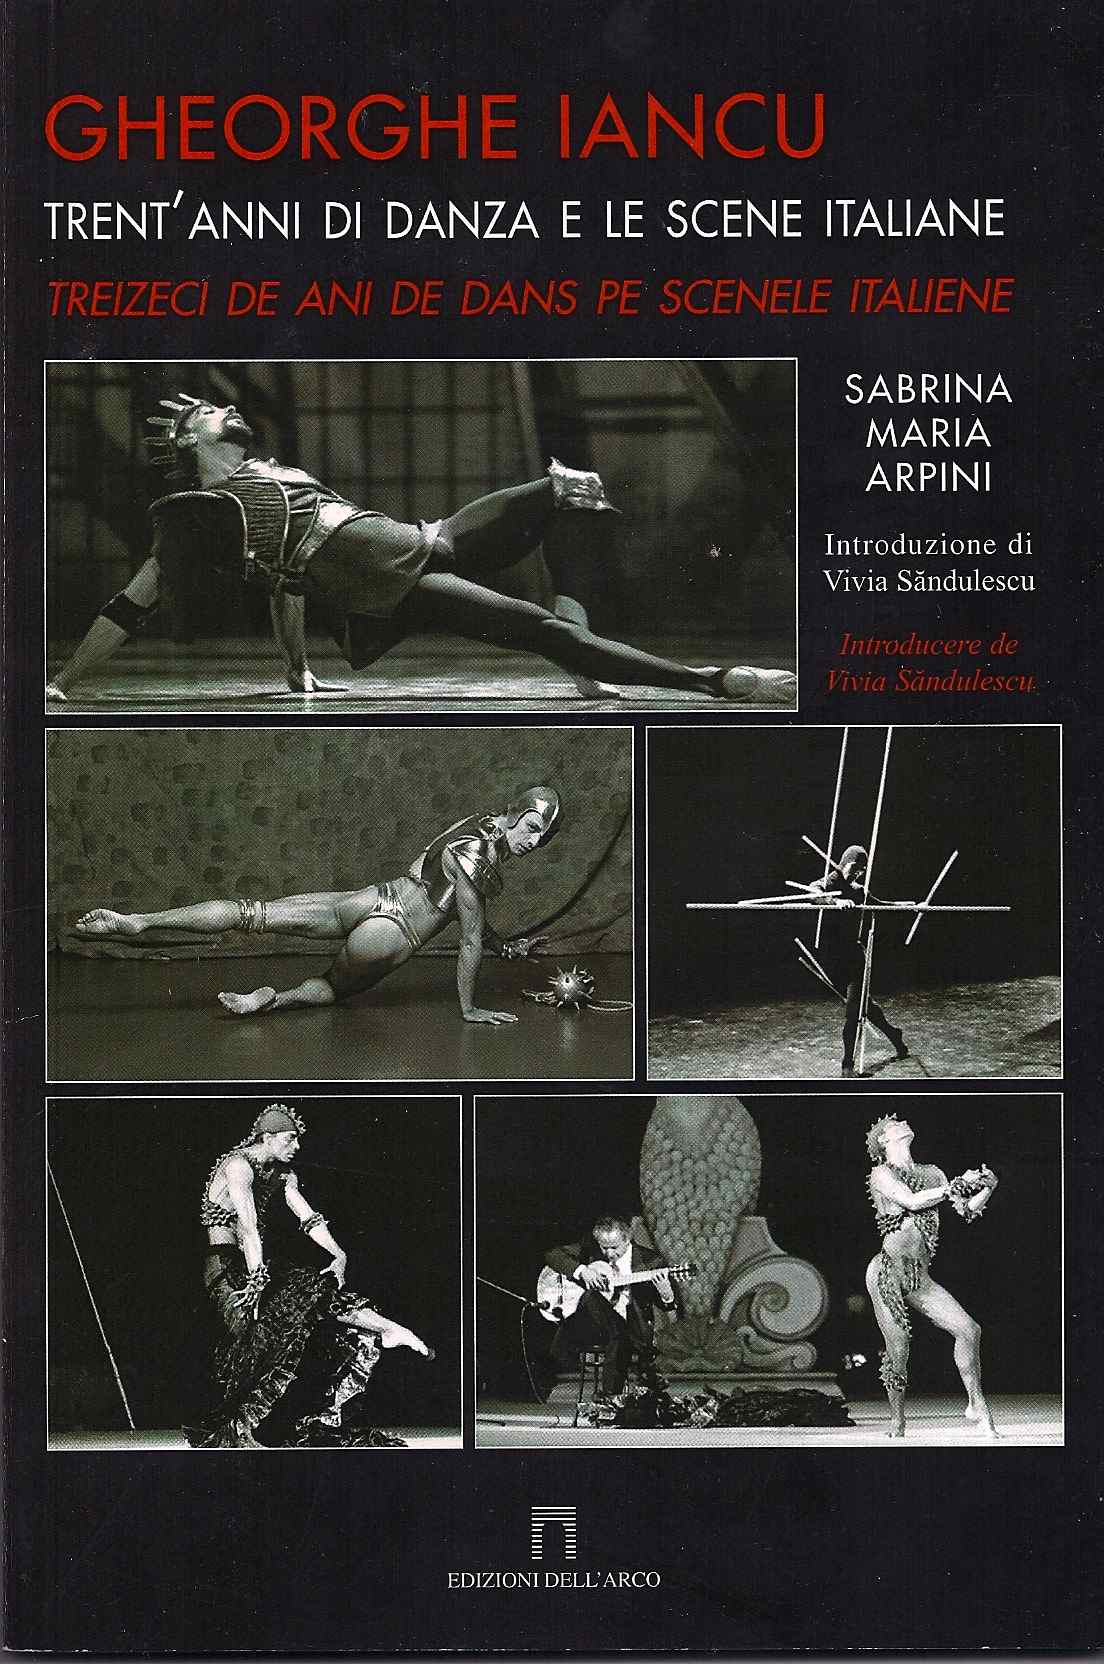 Gheorghe Iancu, Trent’anni di danza e le scene italiane, Sabrina Arpini; 2008